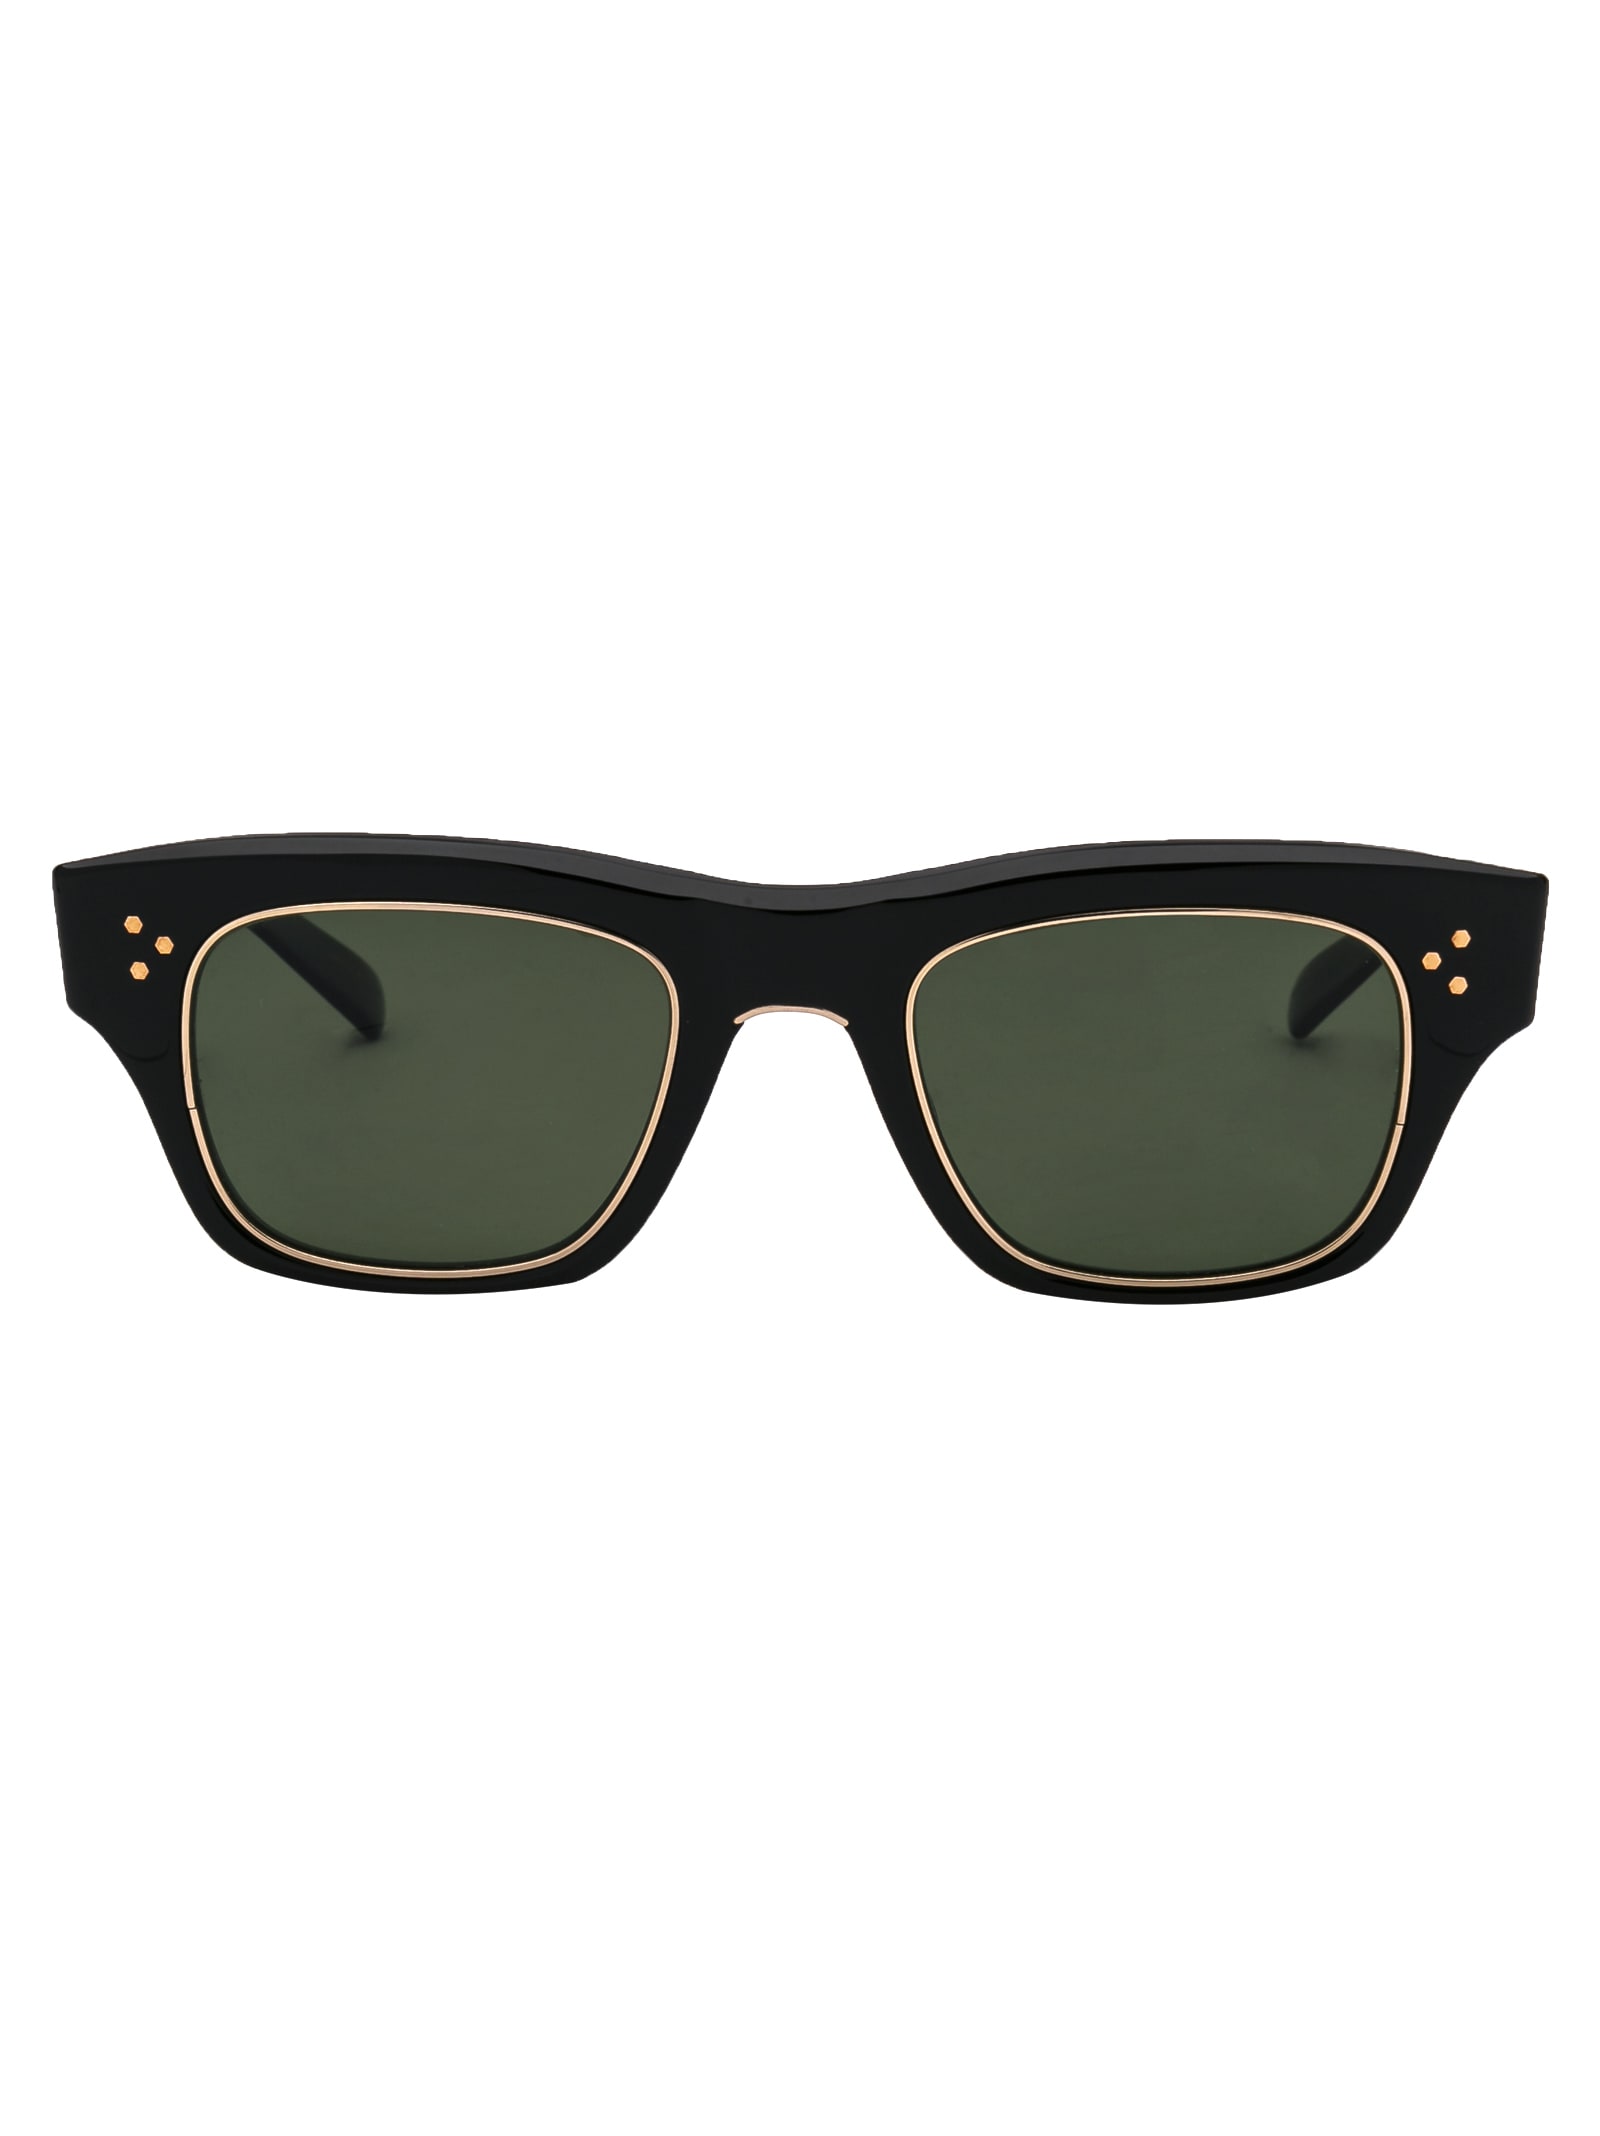 Garrett Leight Go S 48 Sunglasses In Bk-12kwg/g15glssplr